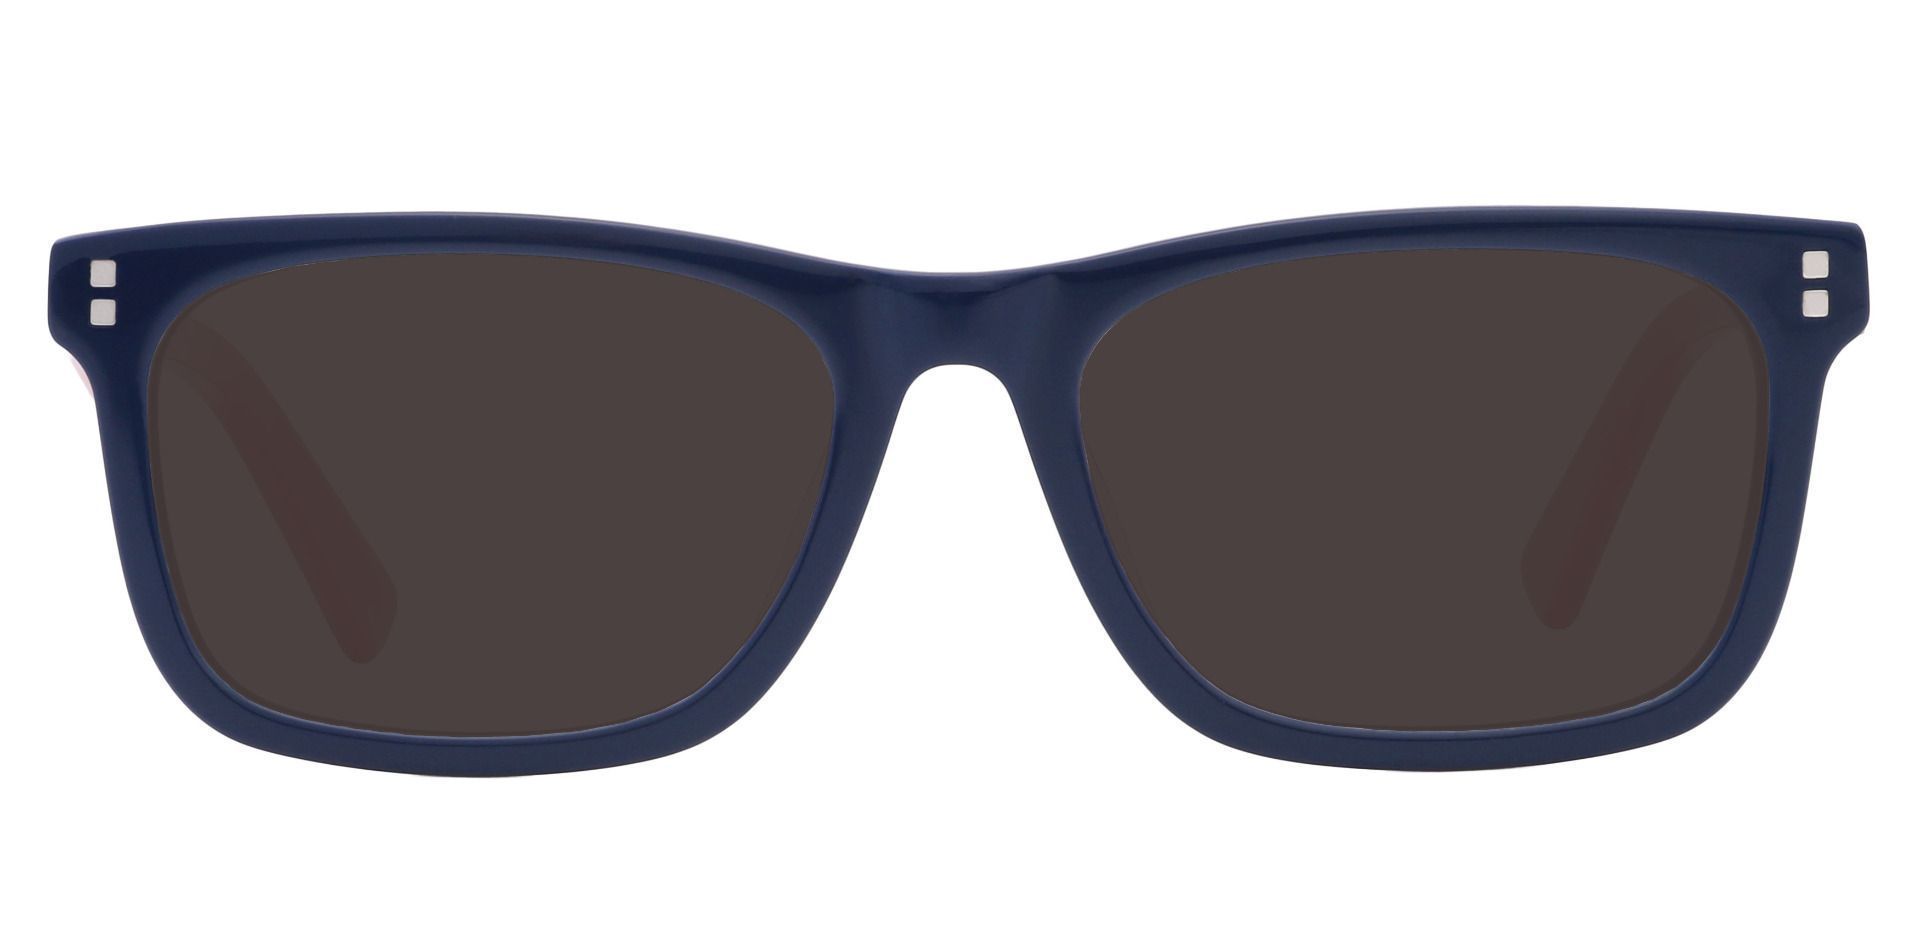 Harbor Rectangle Progressive Sunglasses - Blue Frame With Gray Lenses